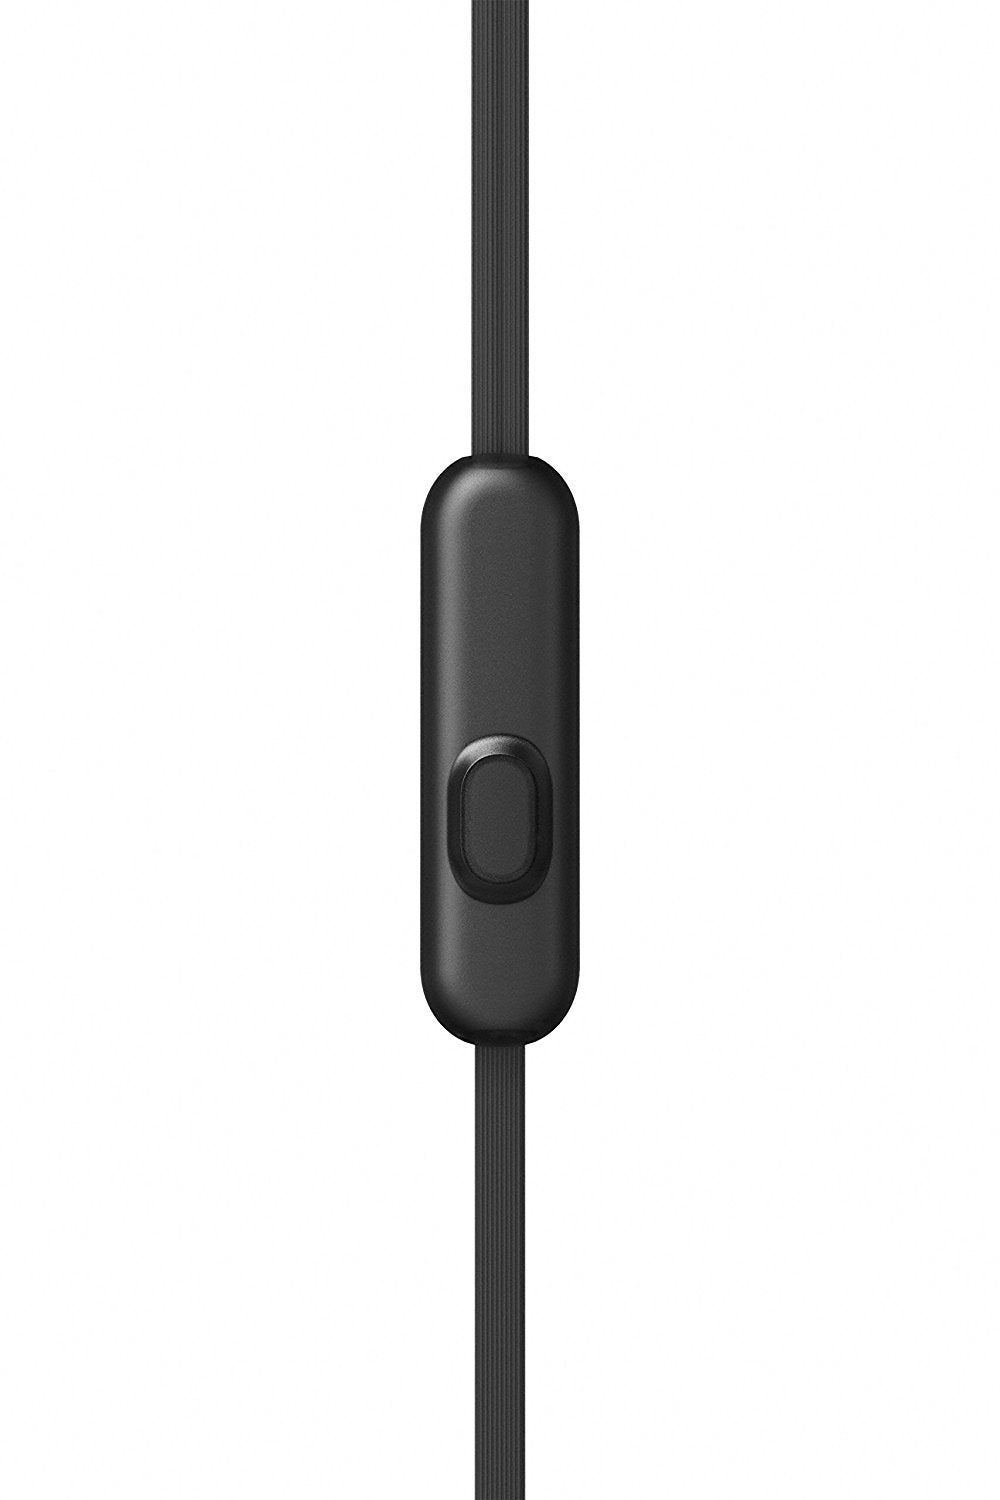 Sony Sony MDR-XB510AS - Sports - Écouteurs avec micro - Ear - Annulation active du bruit - Jack de 3,5 mm - noir